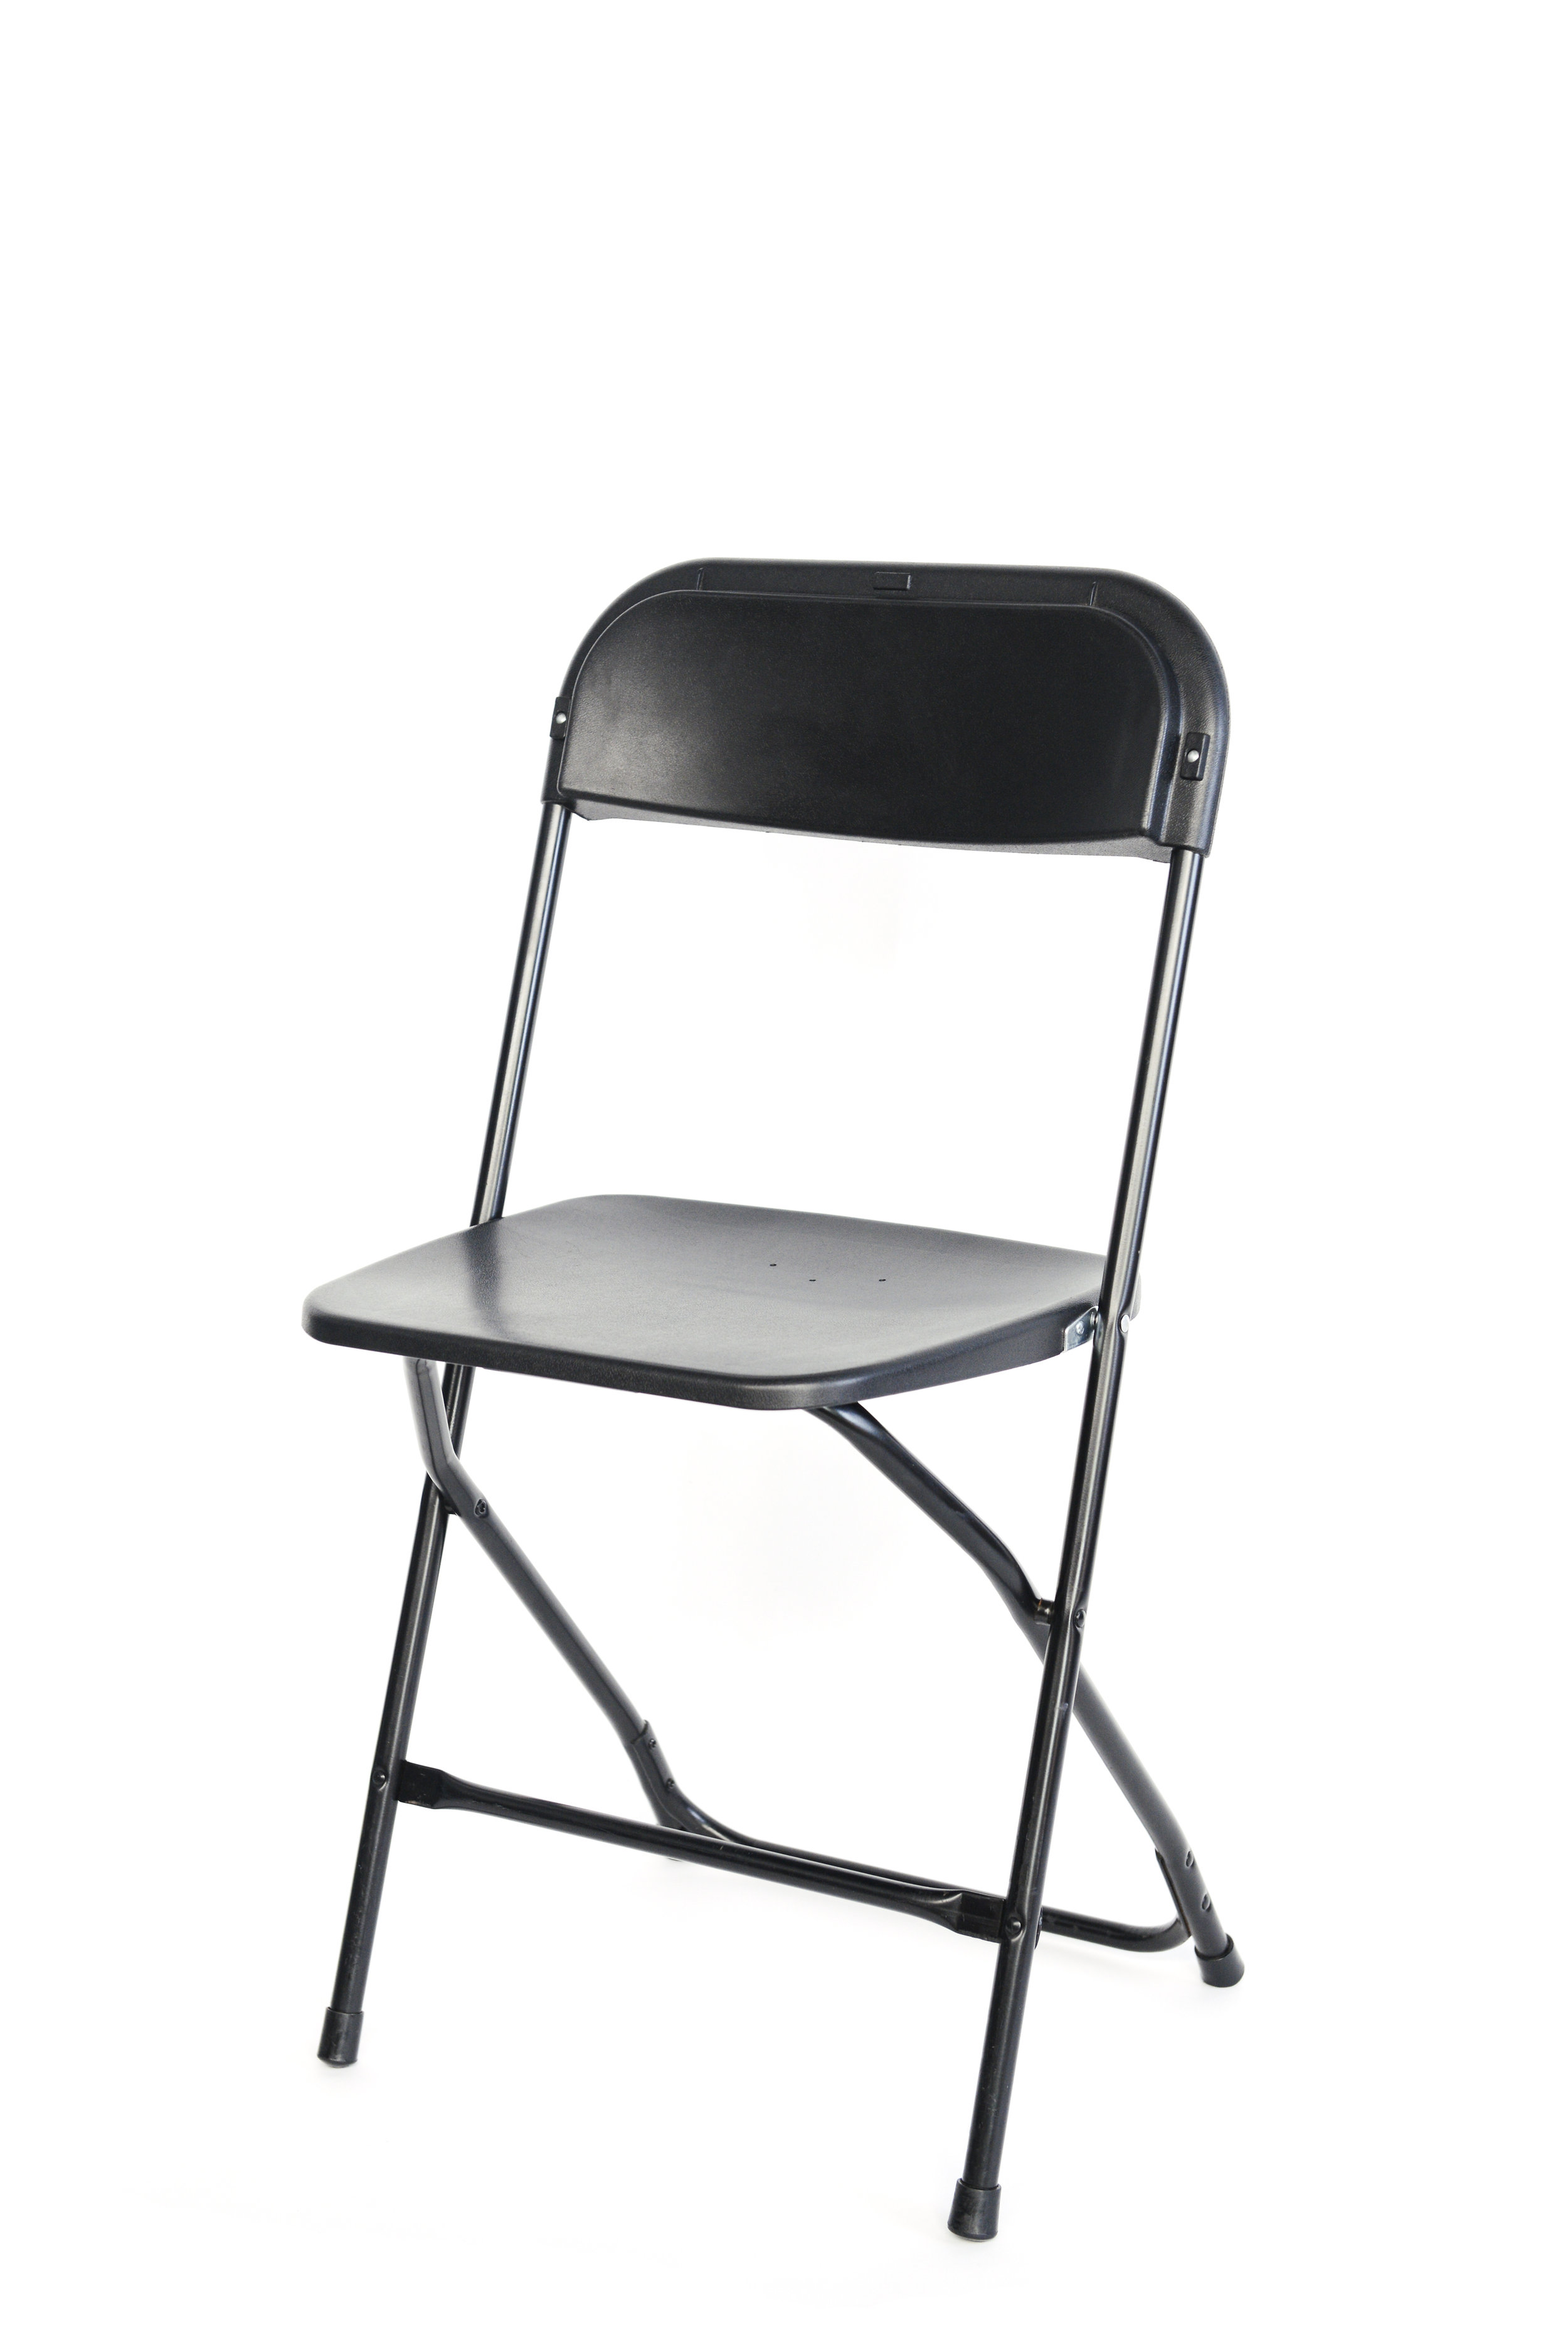 Black folding chairs qty. 50